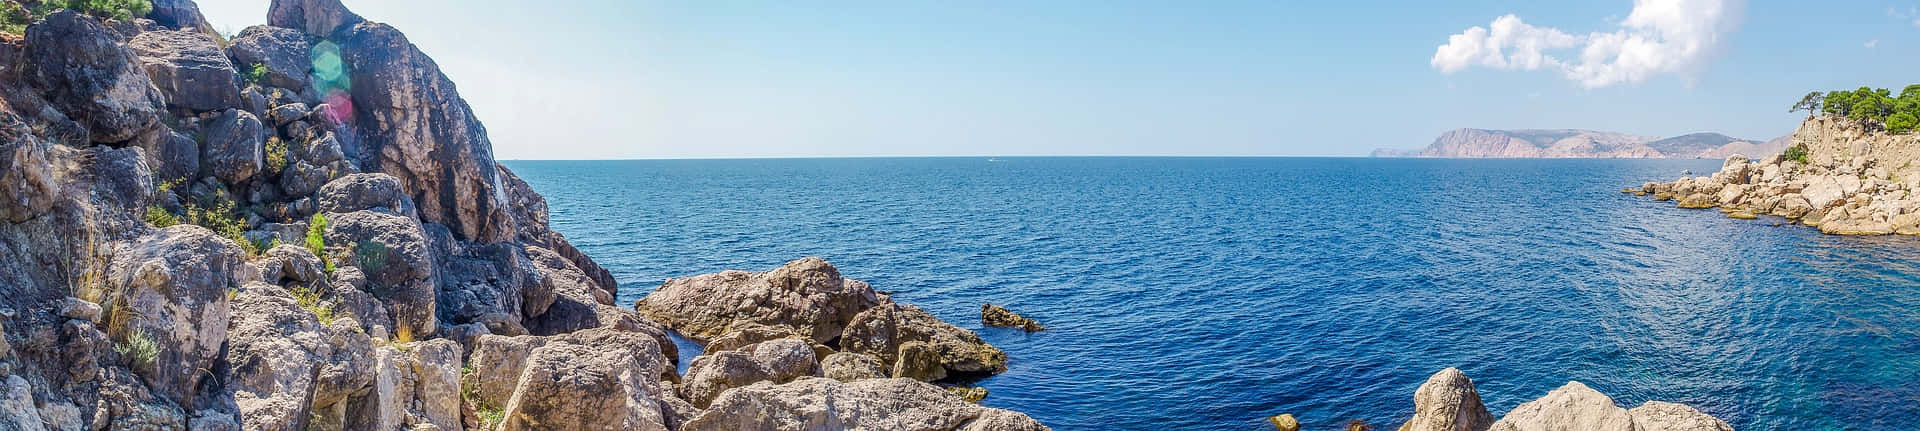 Meerblickmit Felsenformationen, Panoramabild